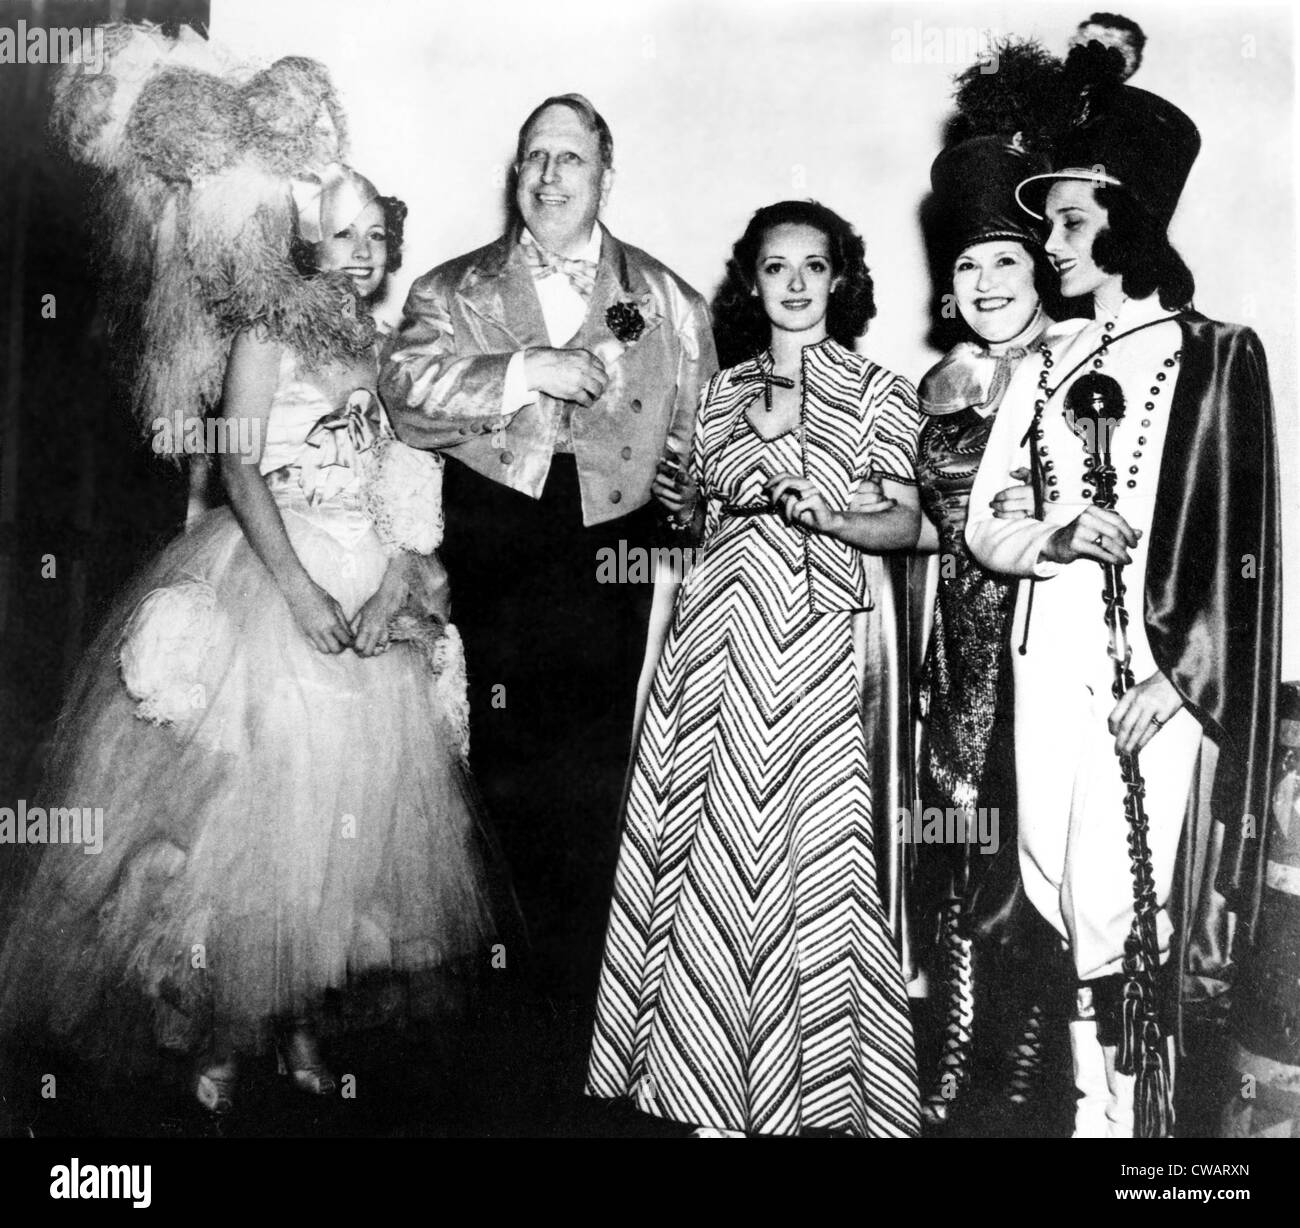 Bal costumé à San Simeon. Irene Dunne, William Randolph Hearst, Bette Davis, Louella Parsons & Mary Brian, 1937. Avec la permission de : Banque D'Images